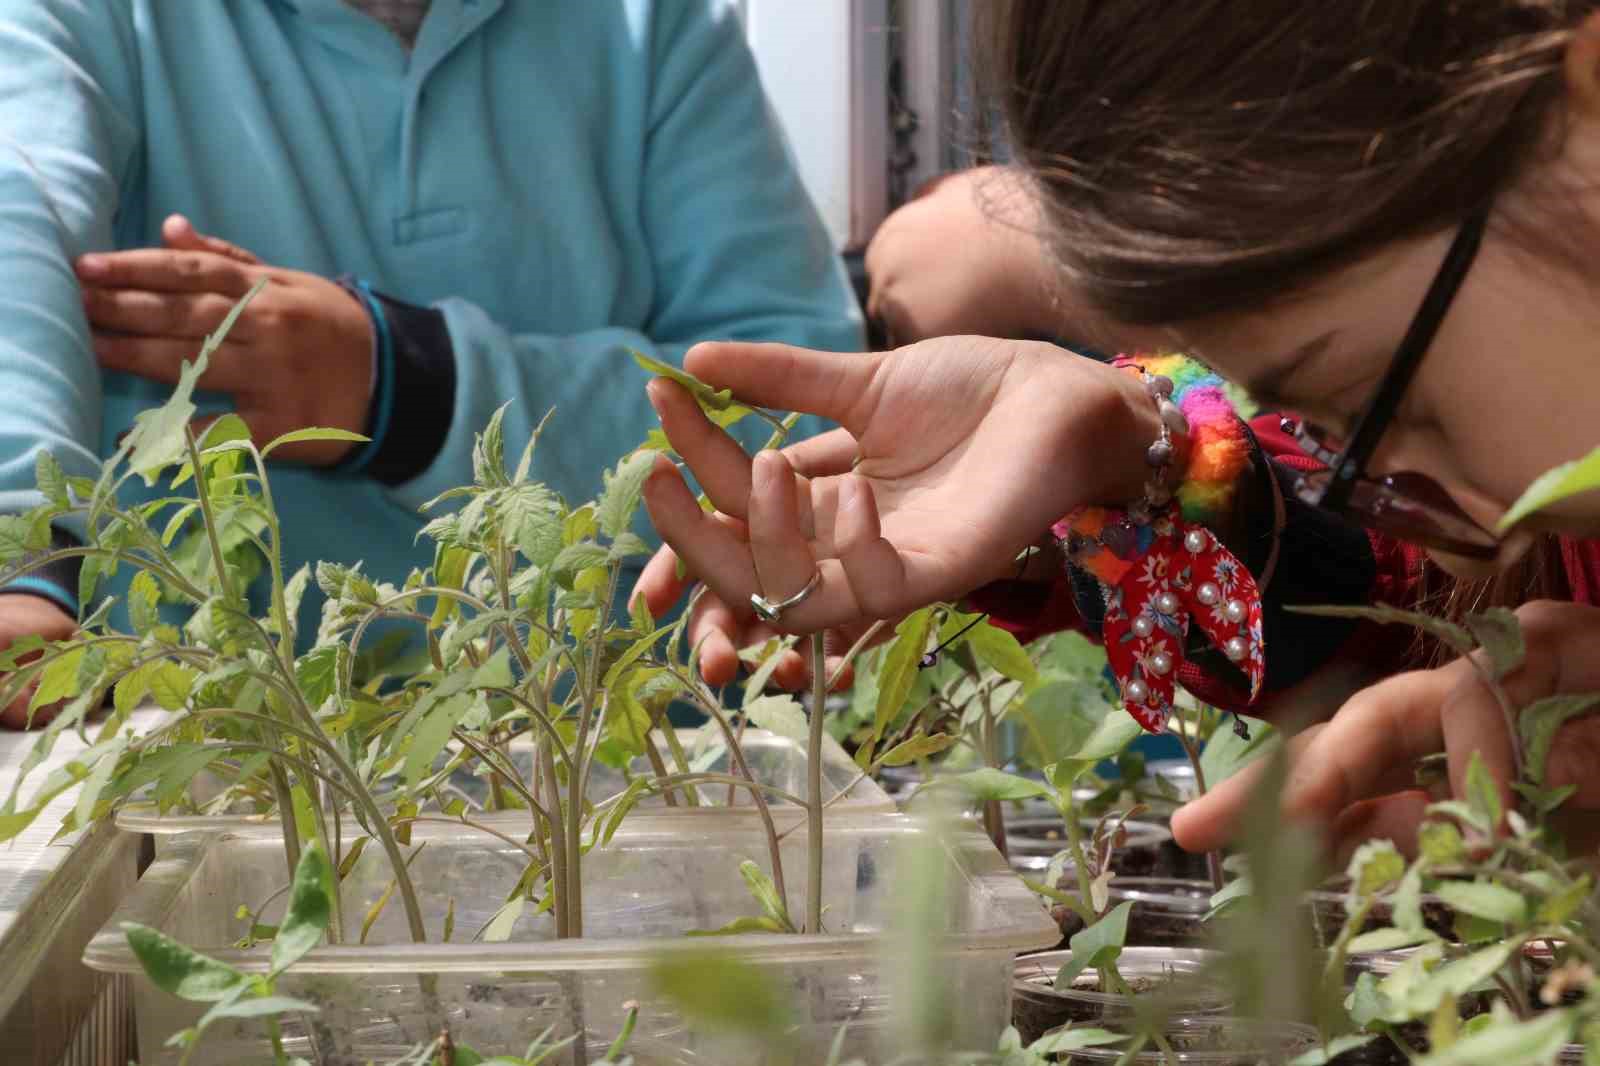 amasyalı öğrenciler okulda ata tohumu ekip fide yetiştirdi